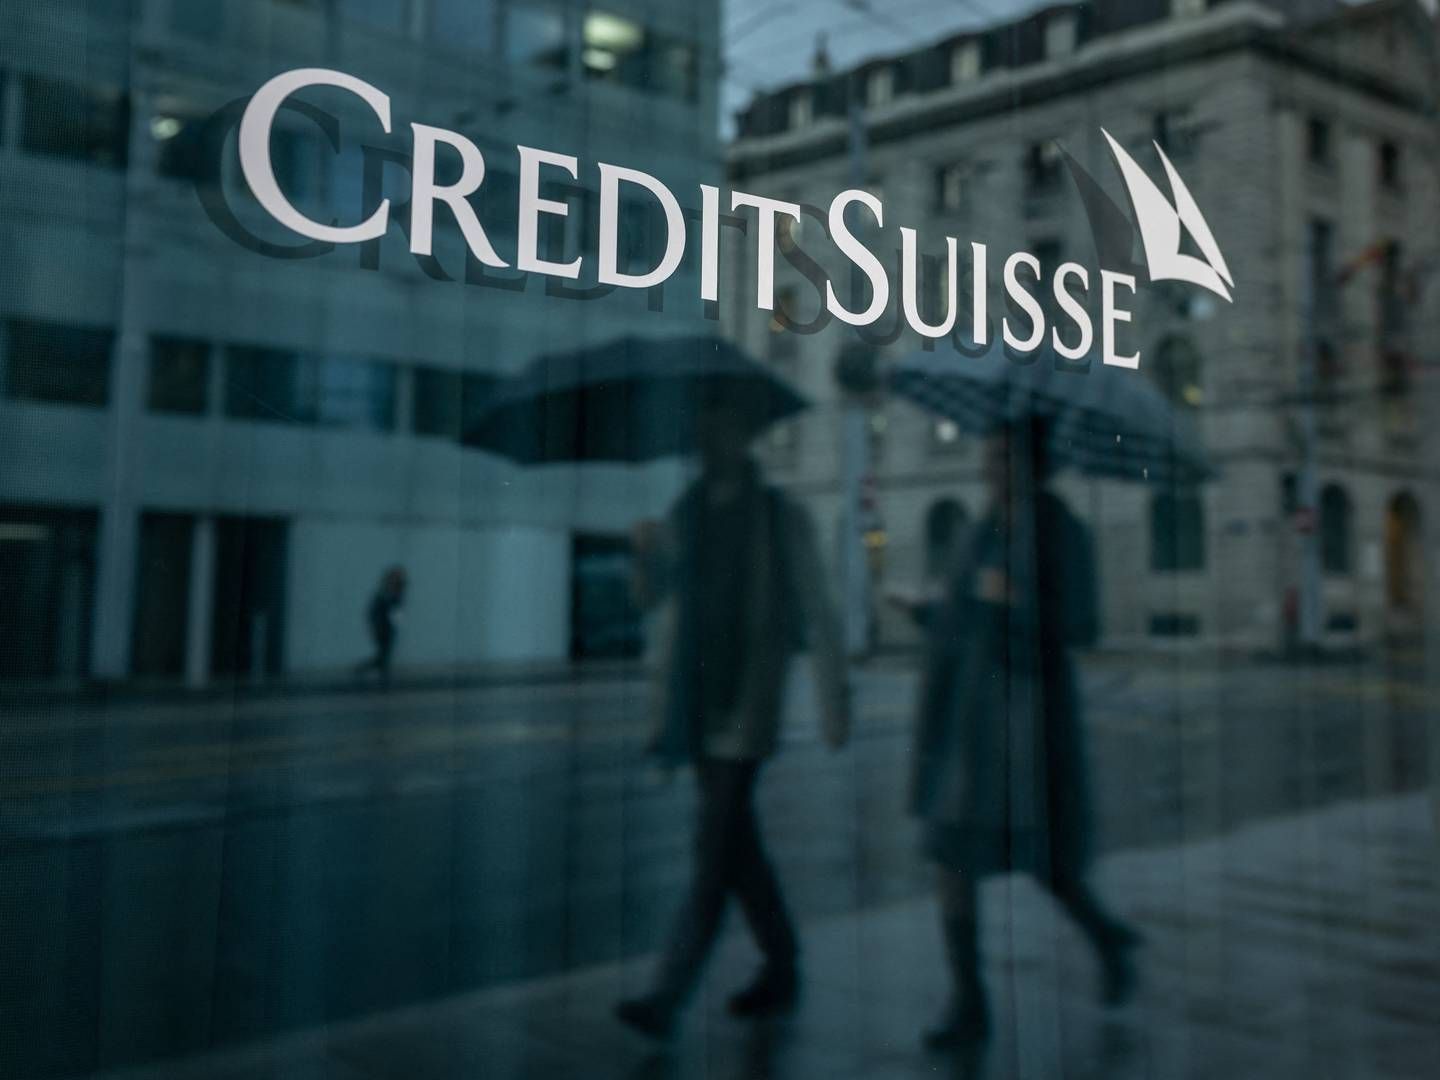 Credit Suisse blev overtaget af en anden schweizisk bank, UBS, efter lang tids krise. | Foto: Fabrice Coffrini